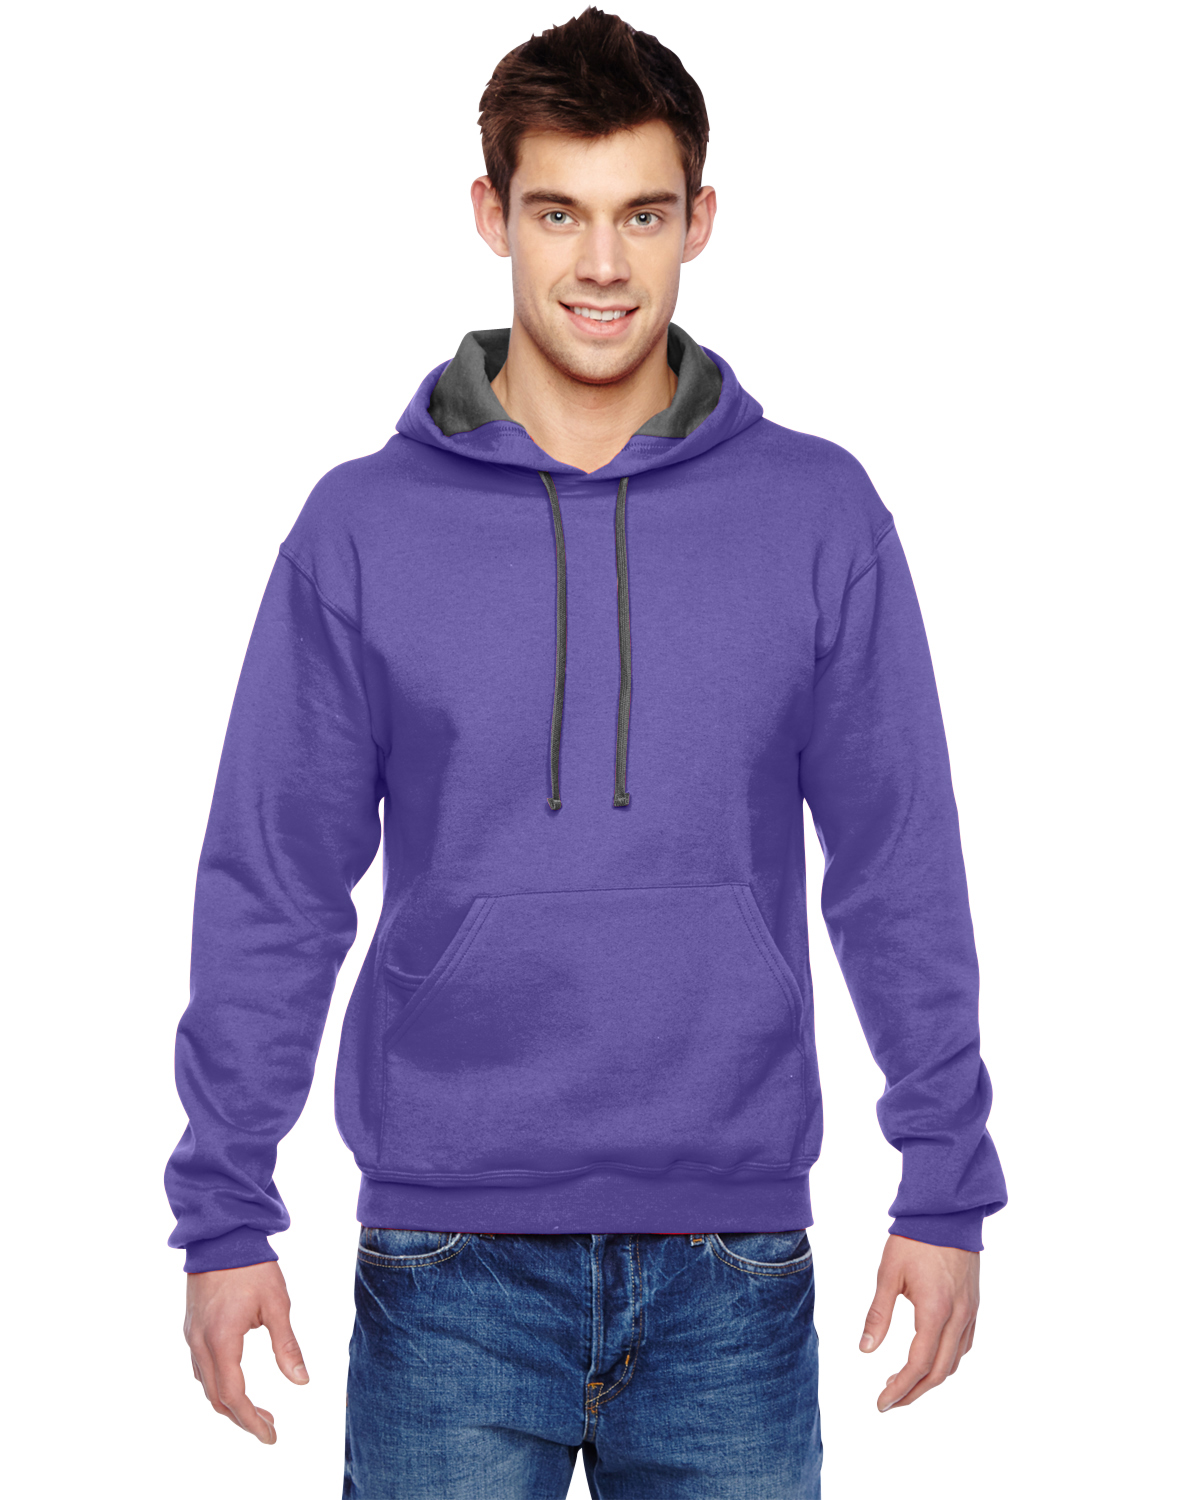 custom-hoodies-no-minimum-design-custom-hoodies-online